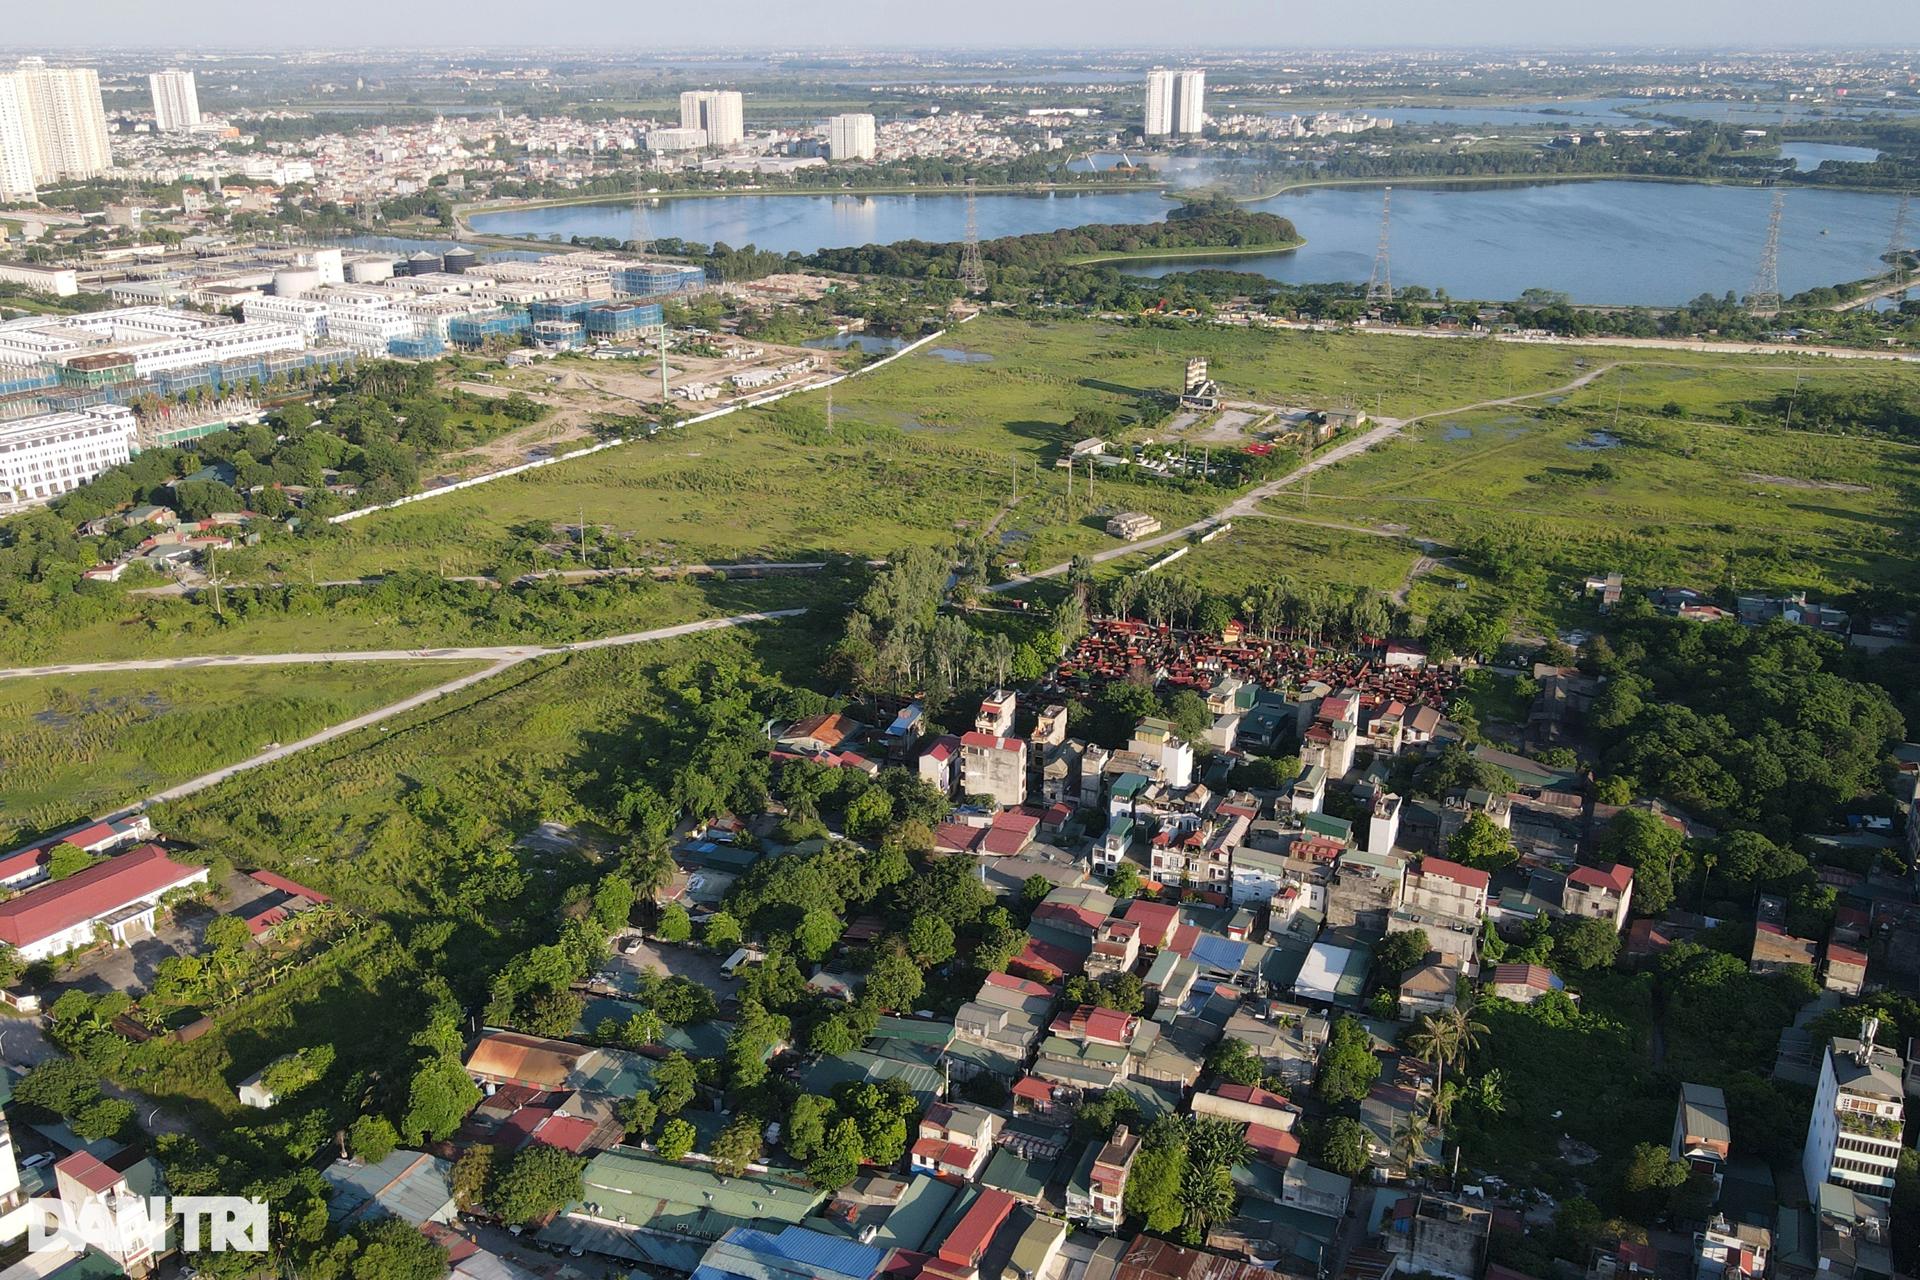 Cận cảnh dự án khu đô thị ôm đất vàng Thủ đô bỏ hoang gần 2 thập kỷ - 1